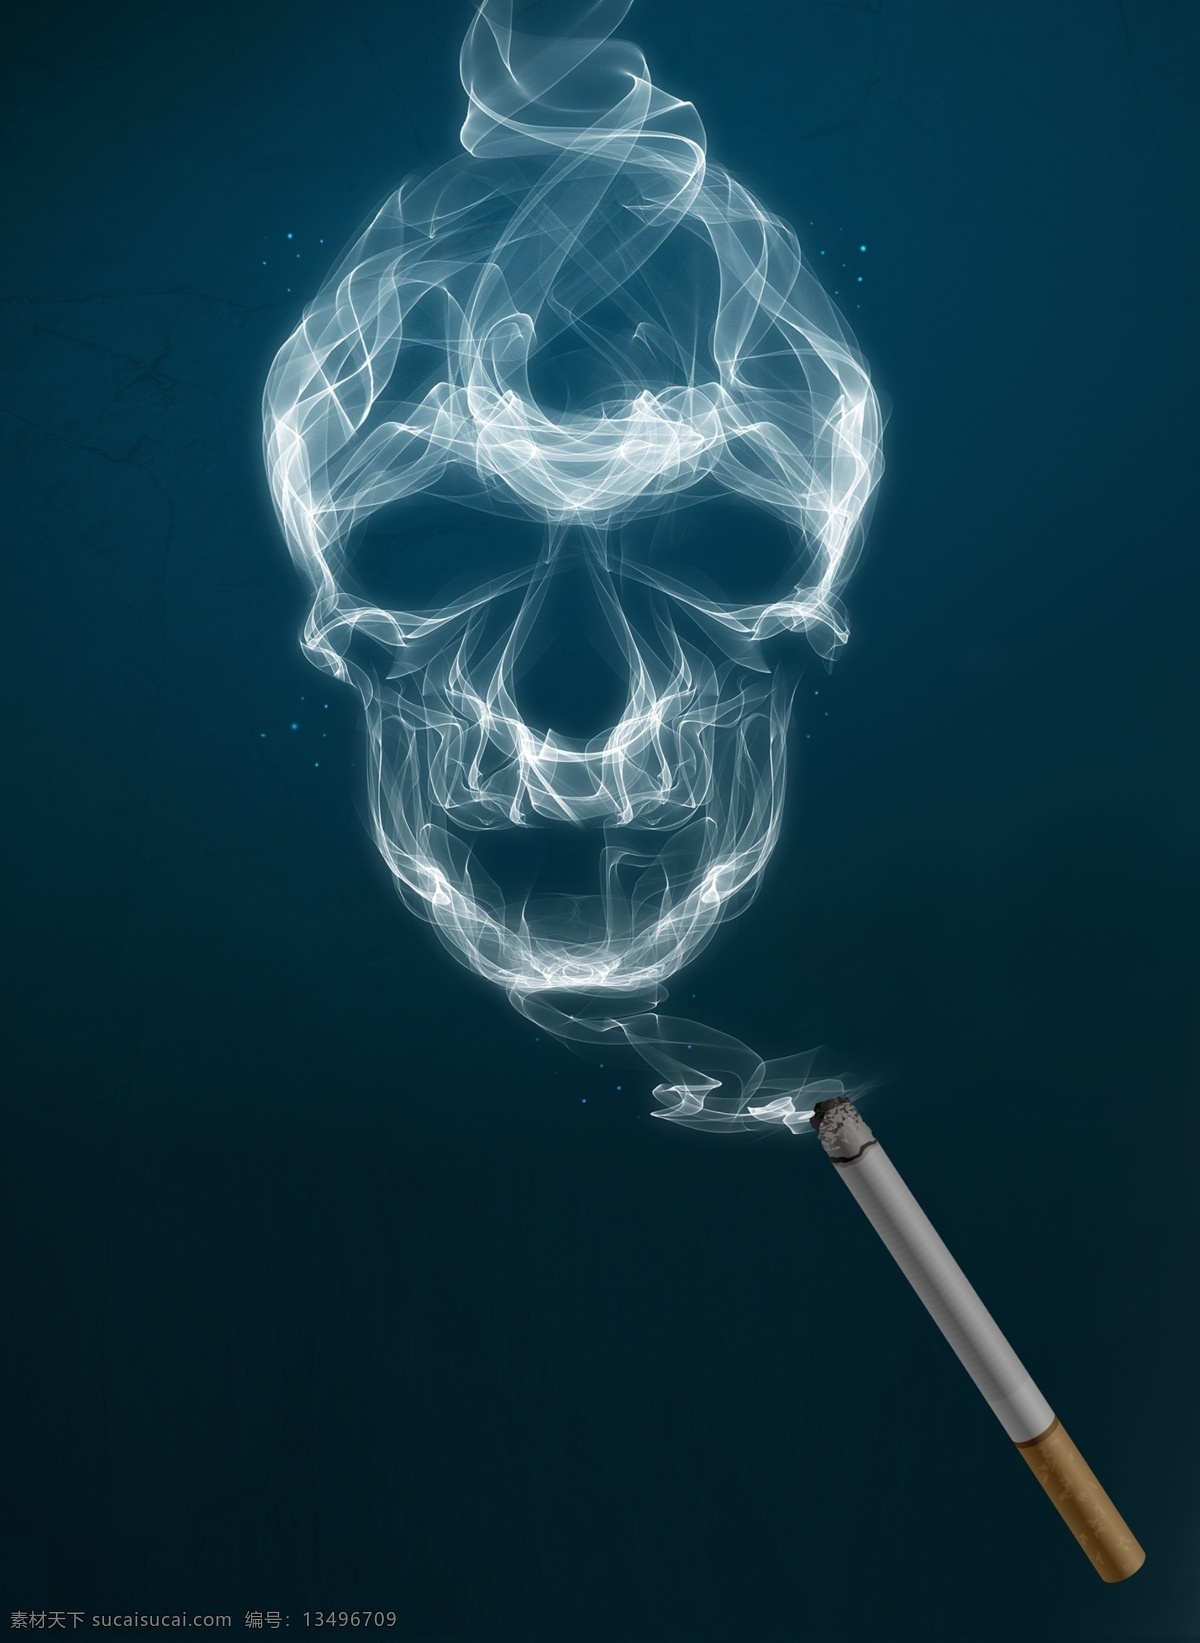 吸烟 有害 健康 插画 背景 用背景 吸烟有害健康 蓝色背景 广告背景 背景素材 背景展板 烟